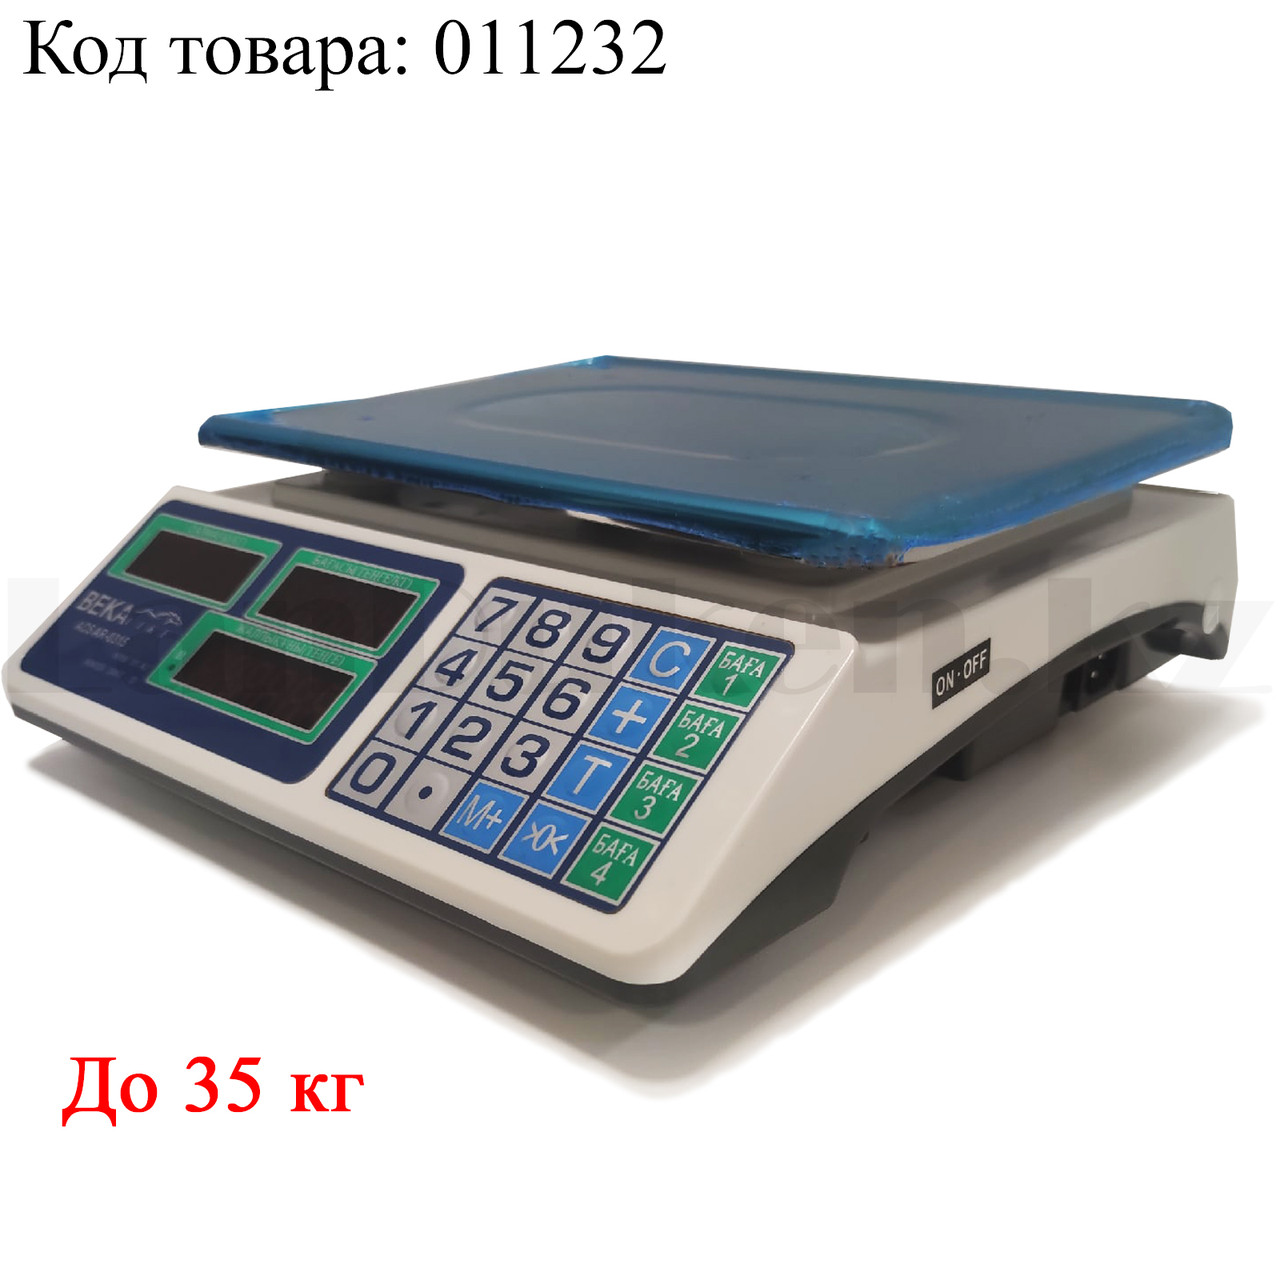 Электронные торговые весы до 35 кг Bekalike ACS AR-0315, фото 1